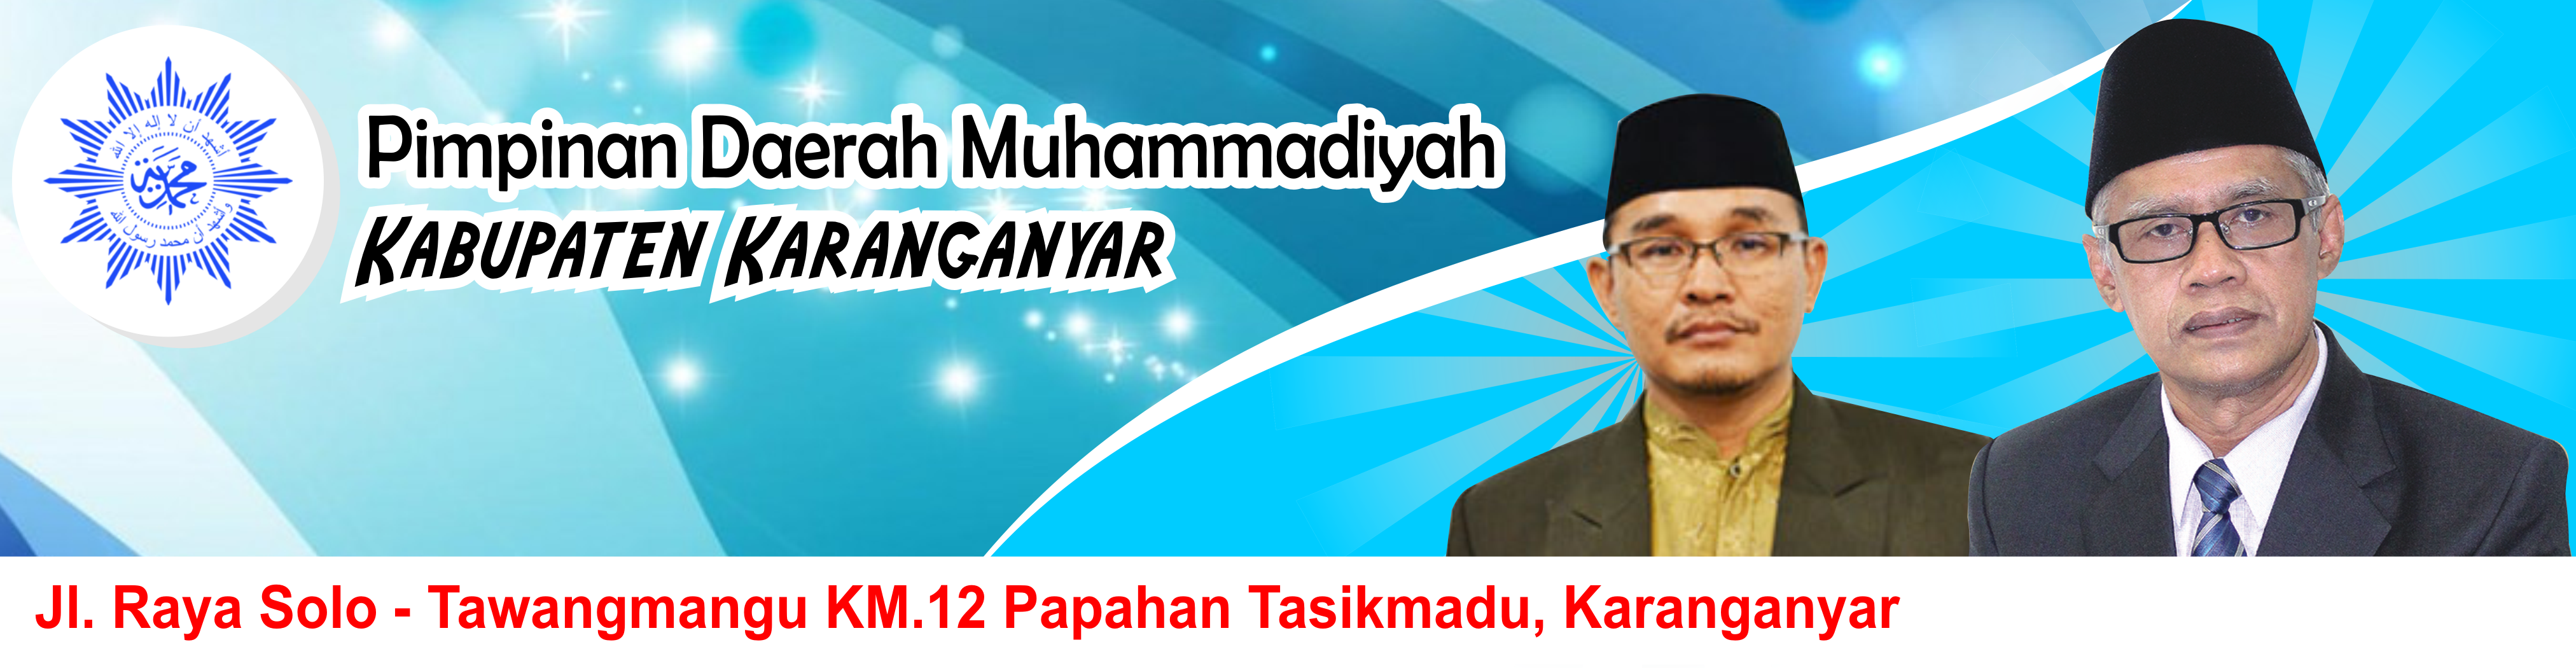 Majelis Pendidikan Kader Pimpinan Daerah Muhammadiyah Kabupaten Karanganyar